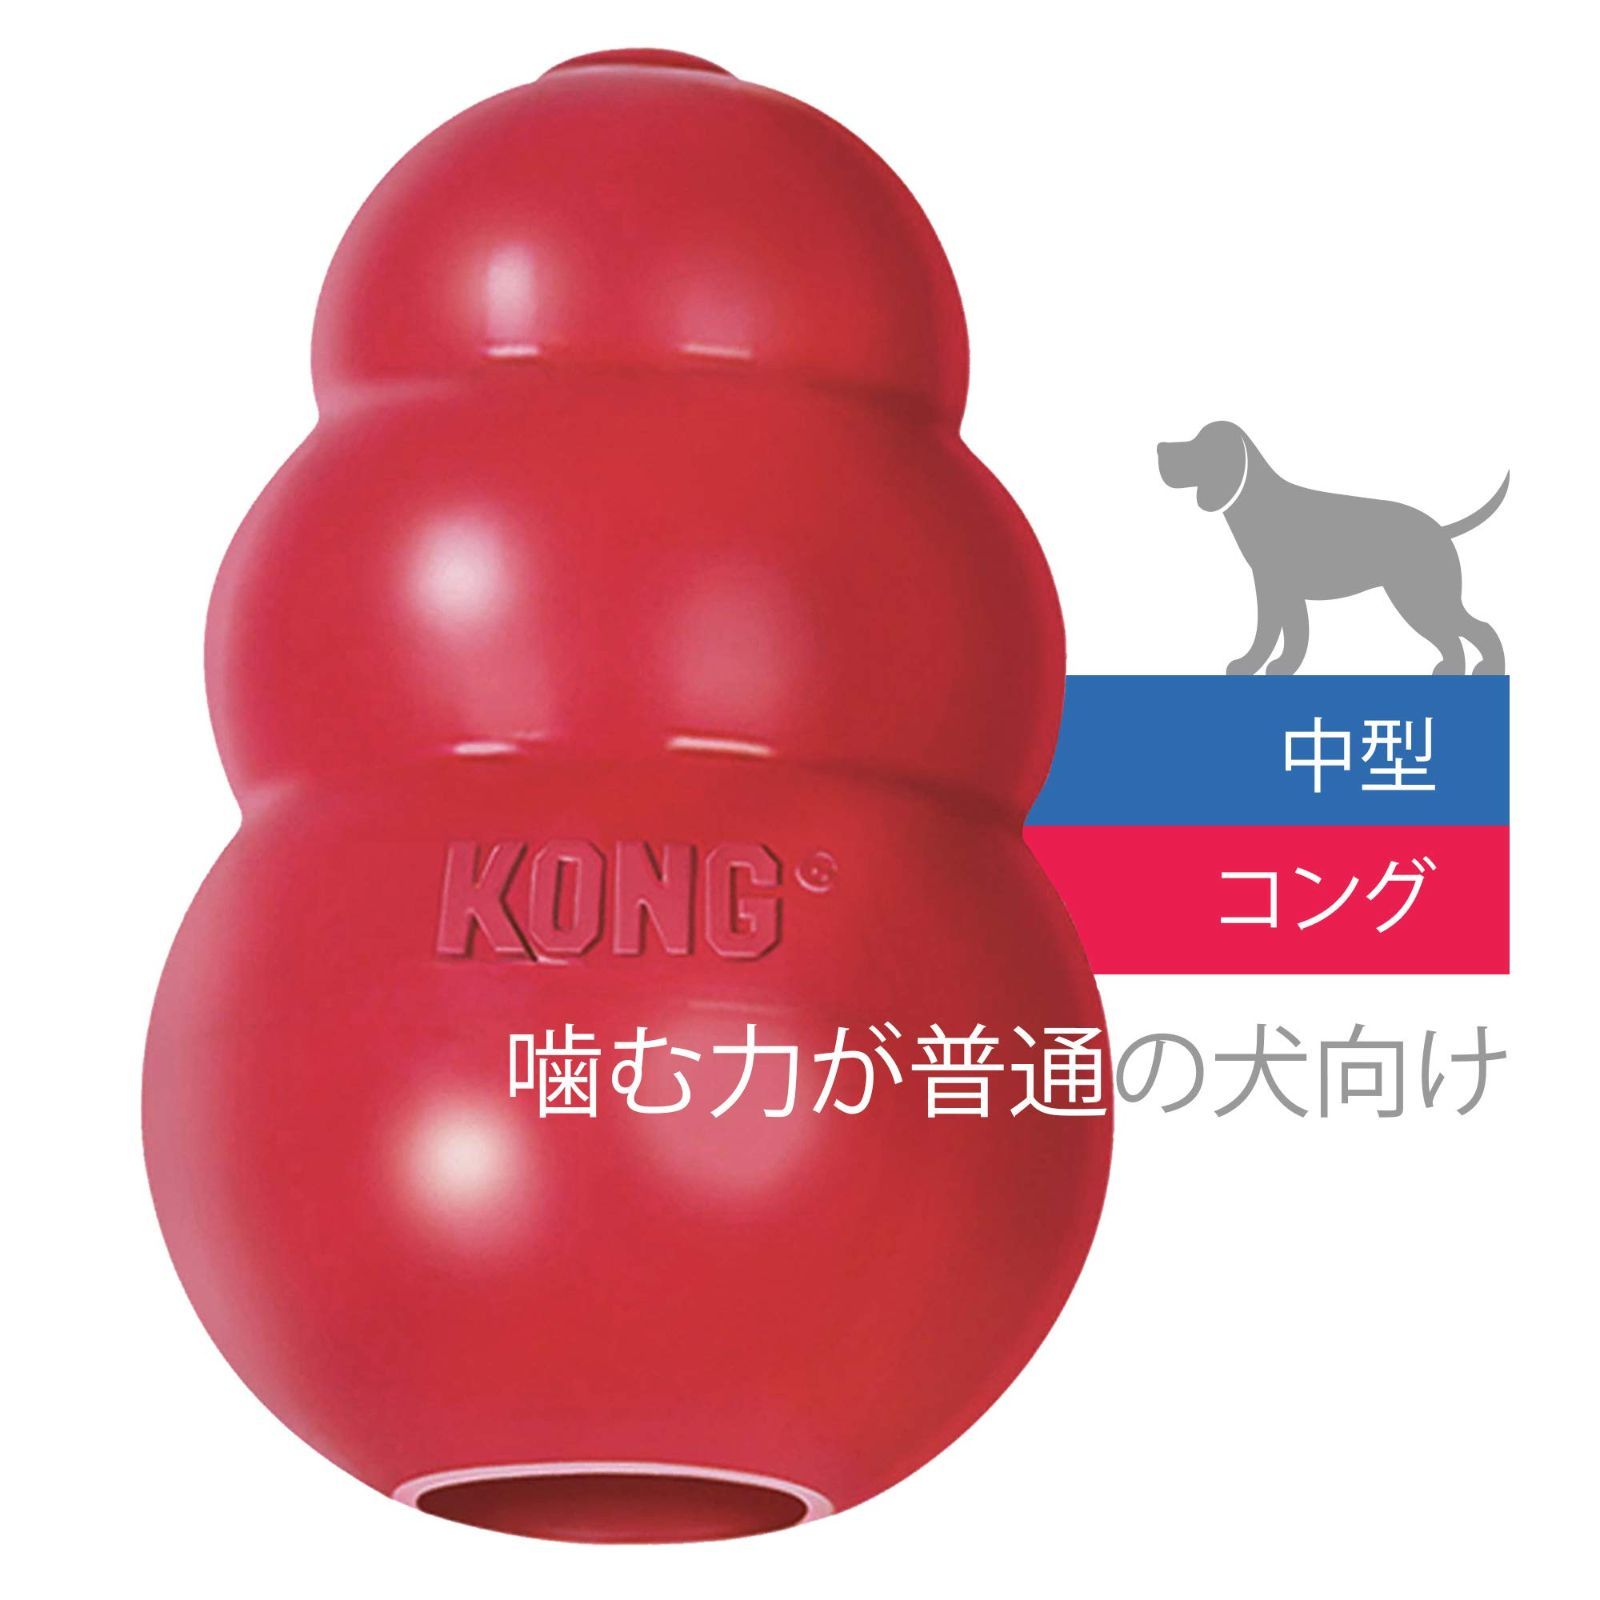 メルカリshops 特価商品 Kong コング 犬用おもちゃ コング M サイズ